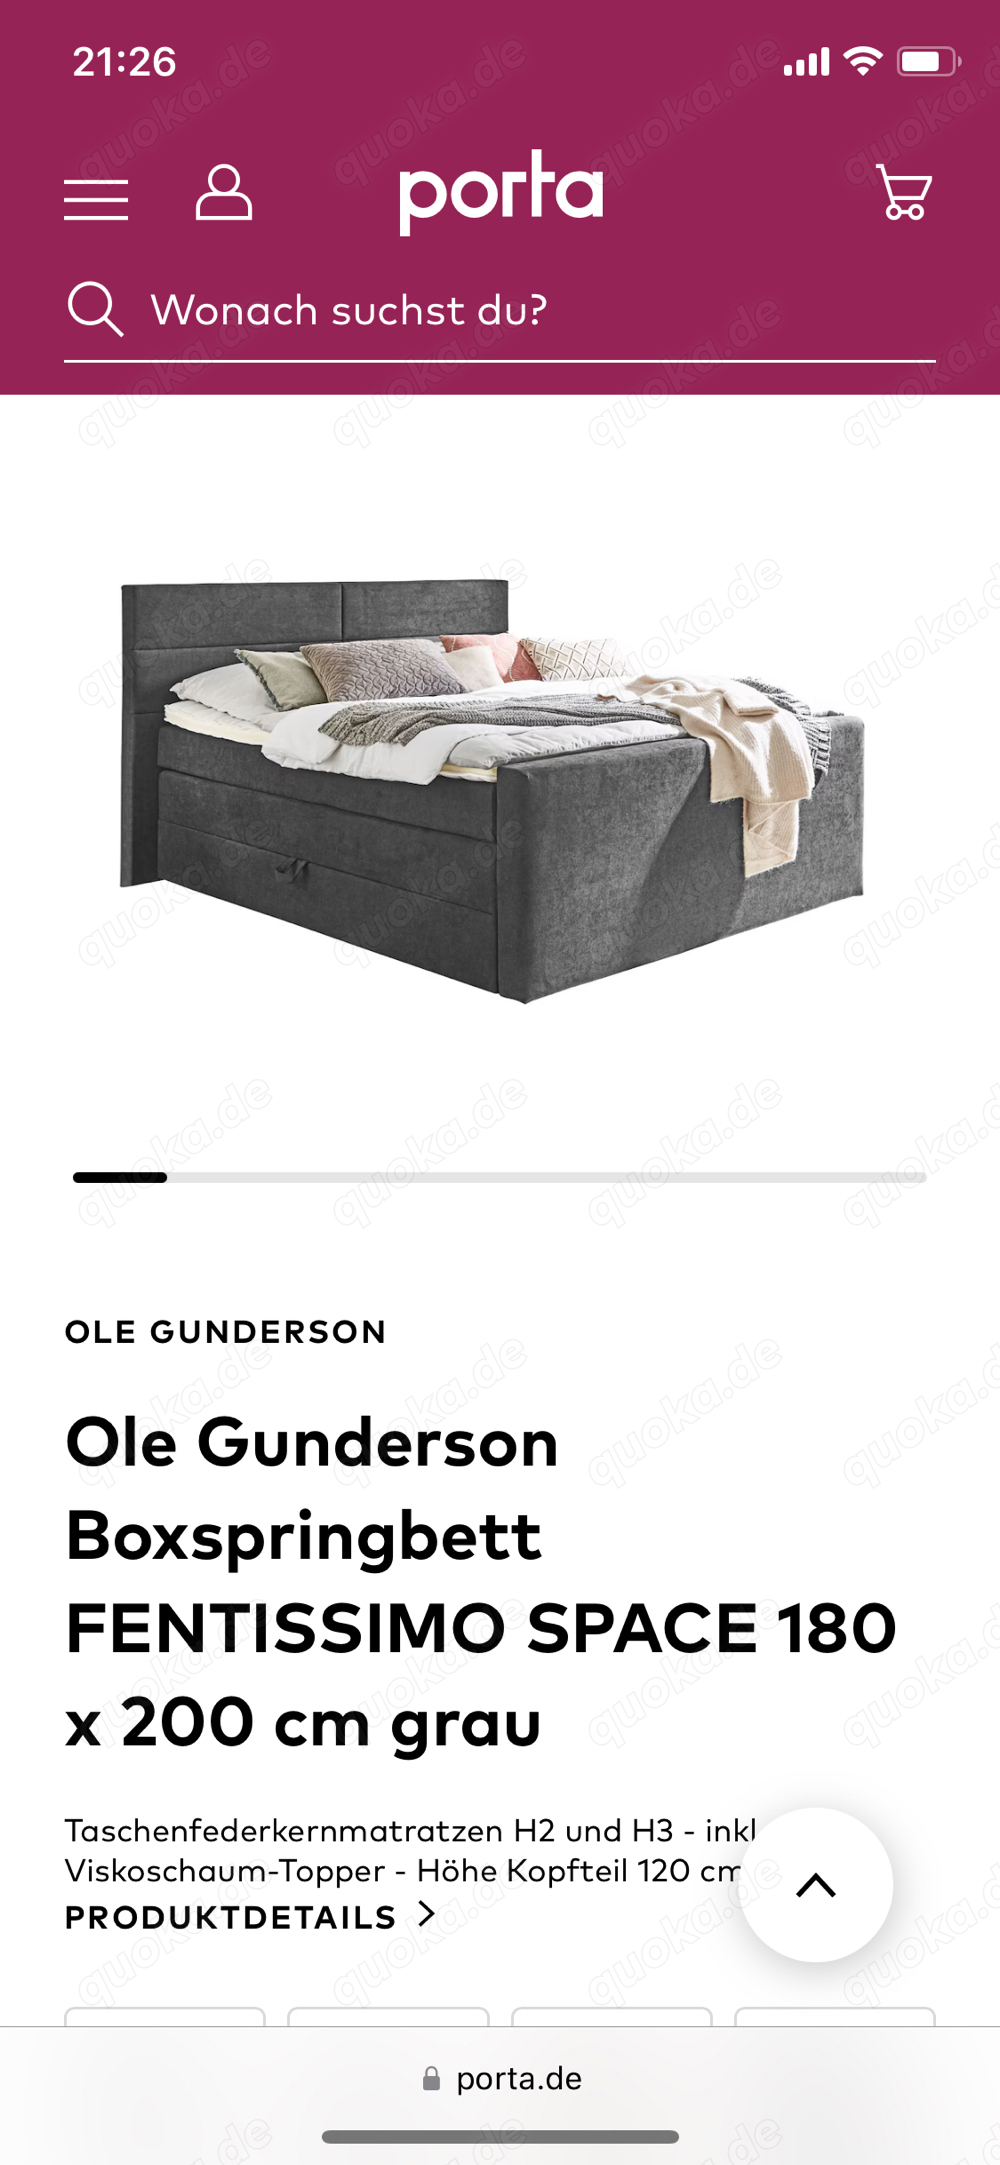 Boxspringbett Ole Gunderson 180x200cm mit Bettkasten